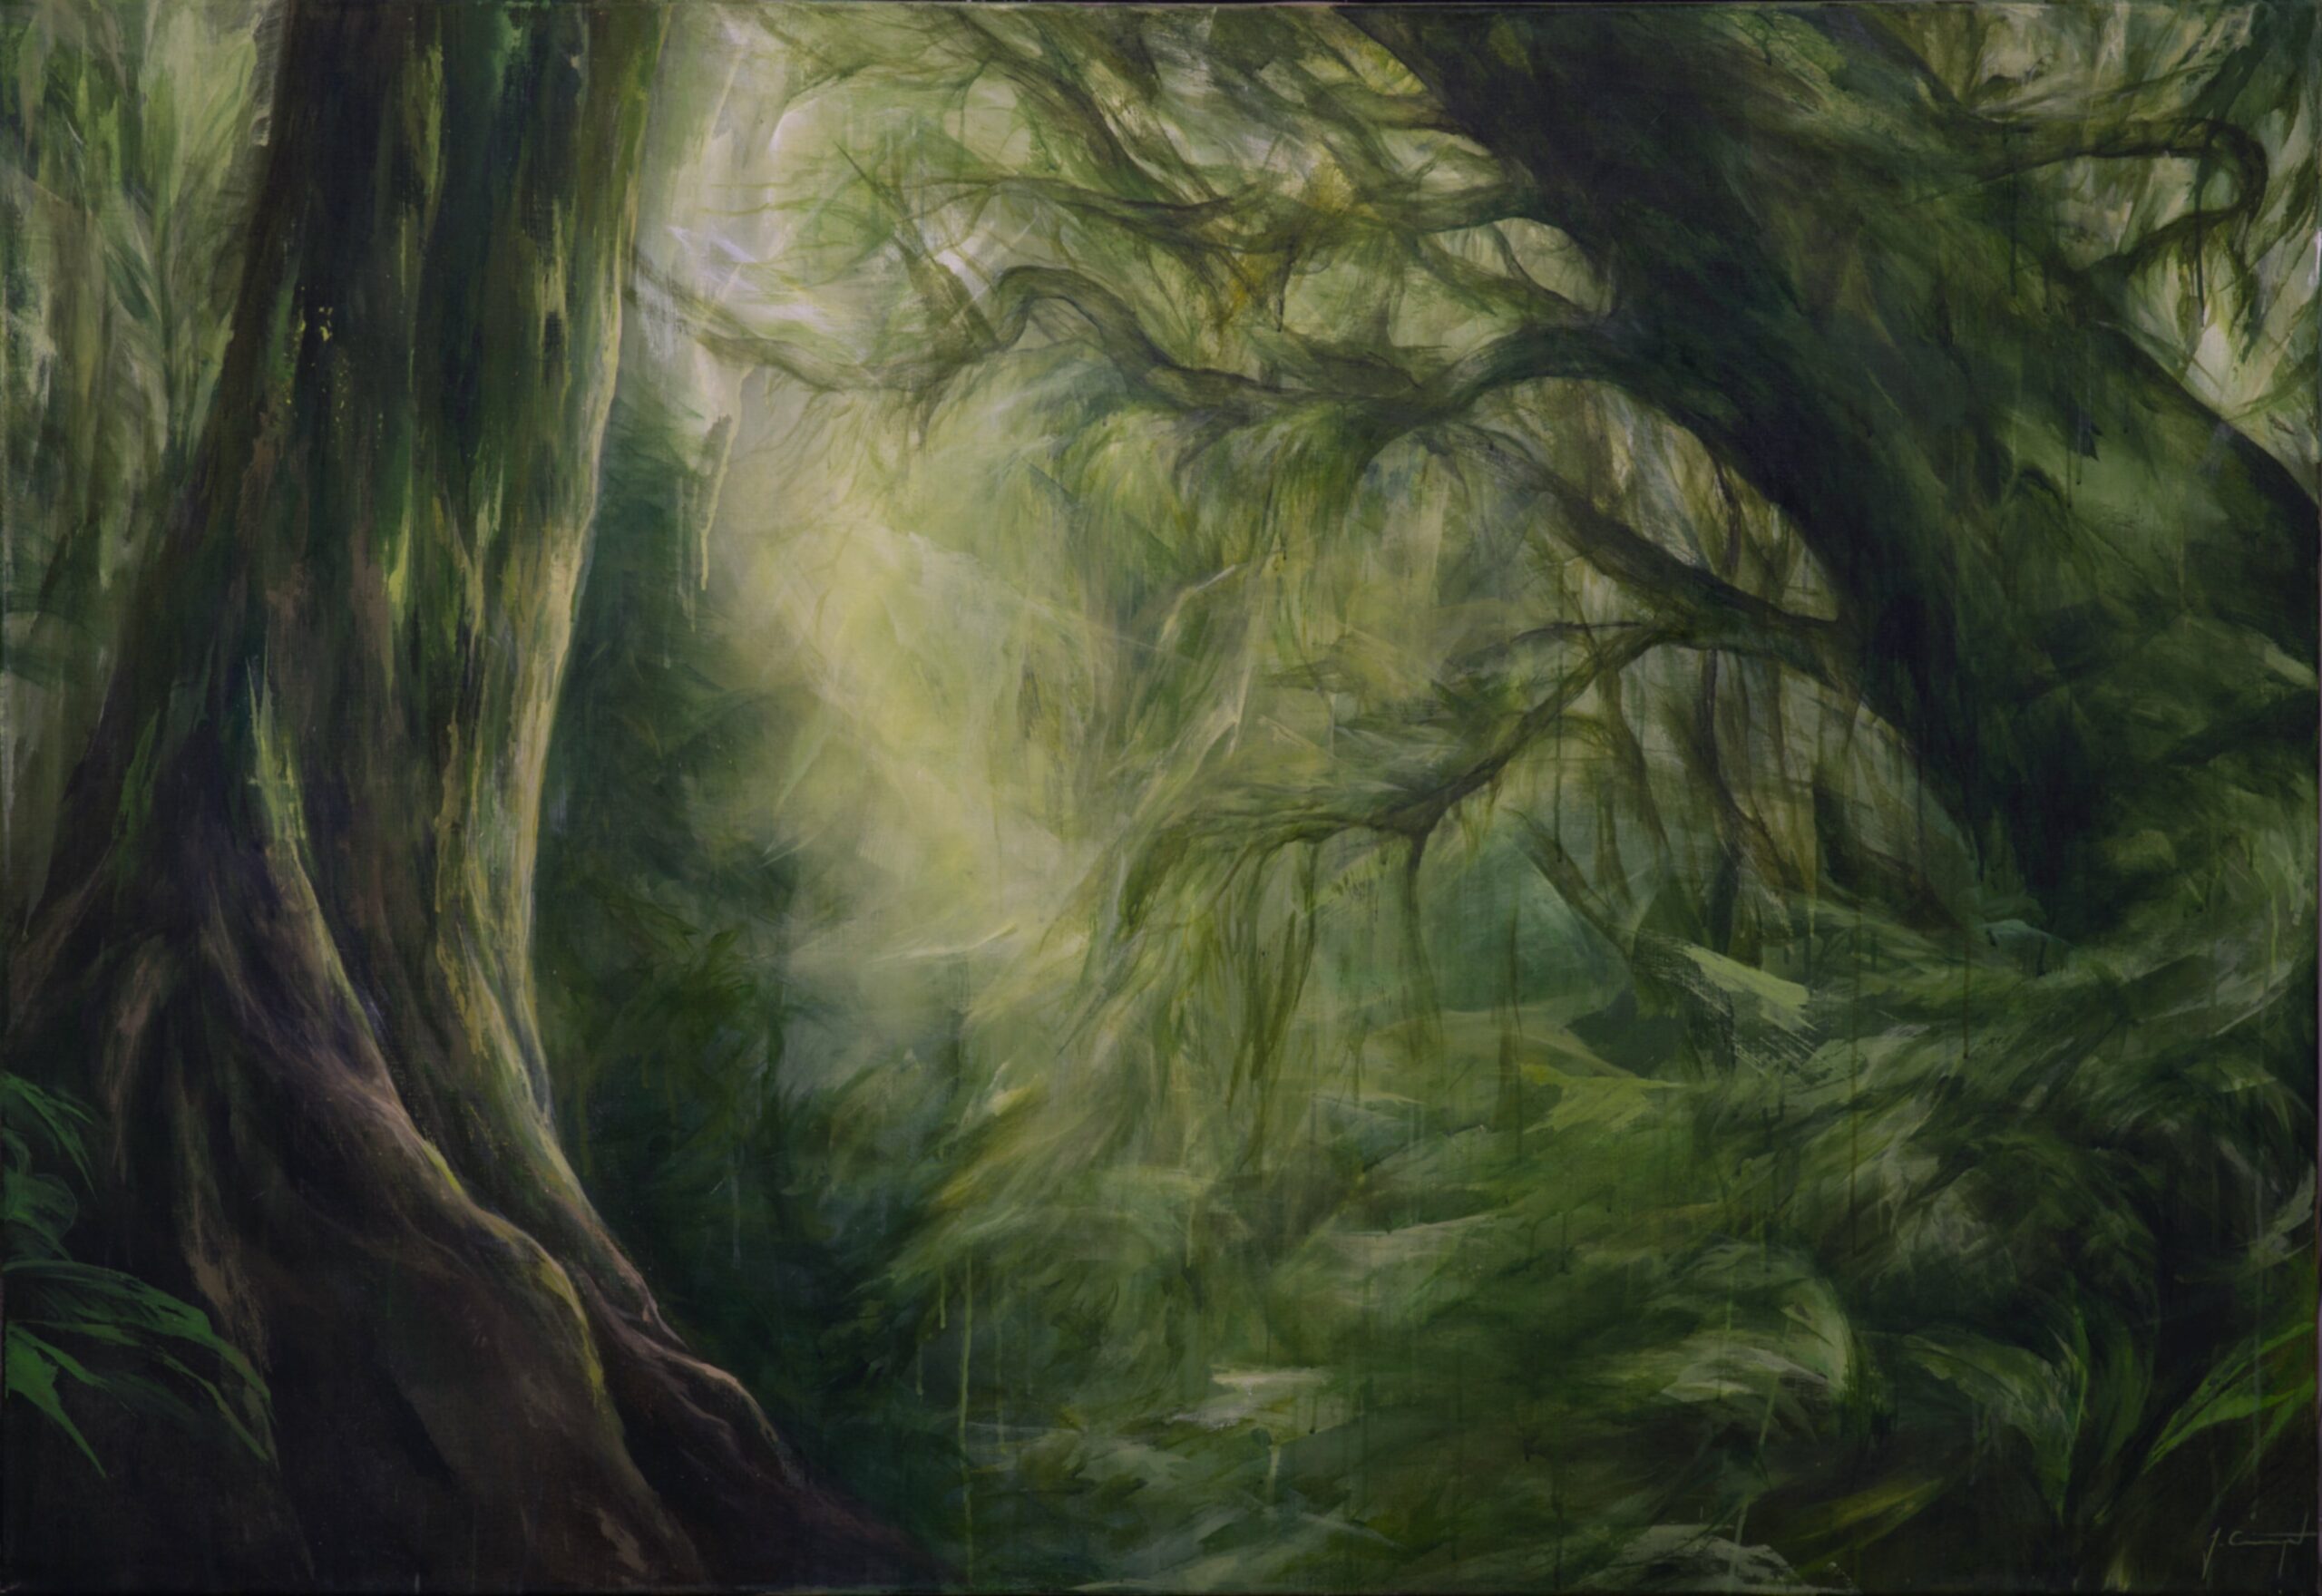 Gemälde einer Regenwaldszenerie. Llicht fällt durch die Blätter.